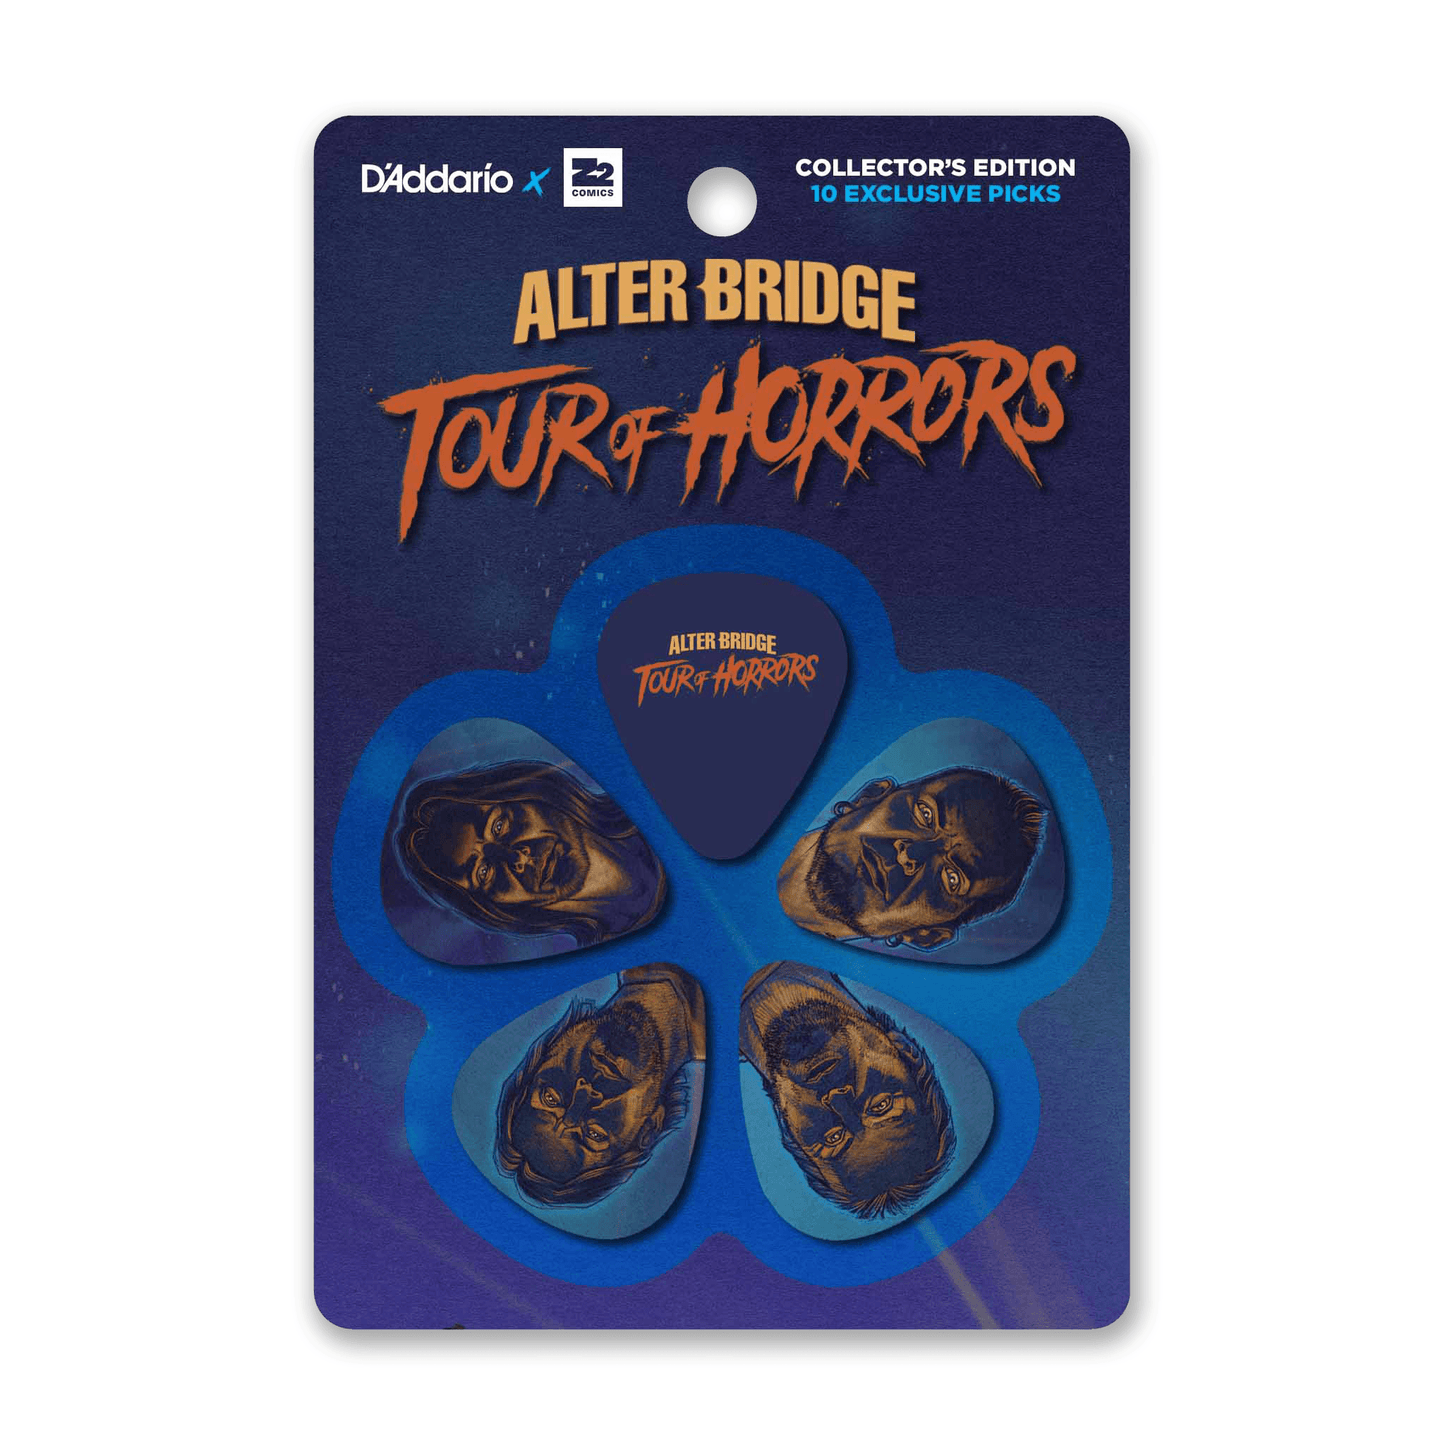 Alter Bridge: Tour of Horrors 기타 픽업 세트